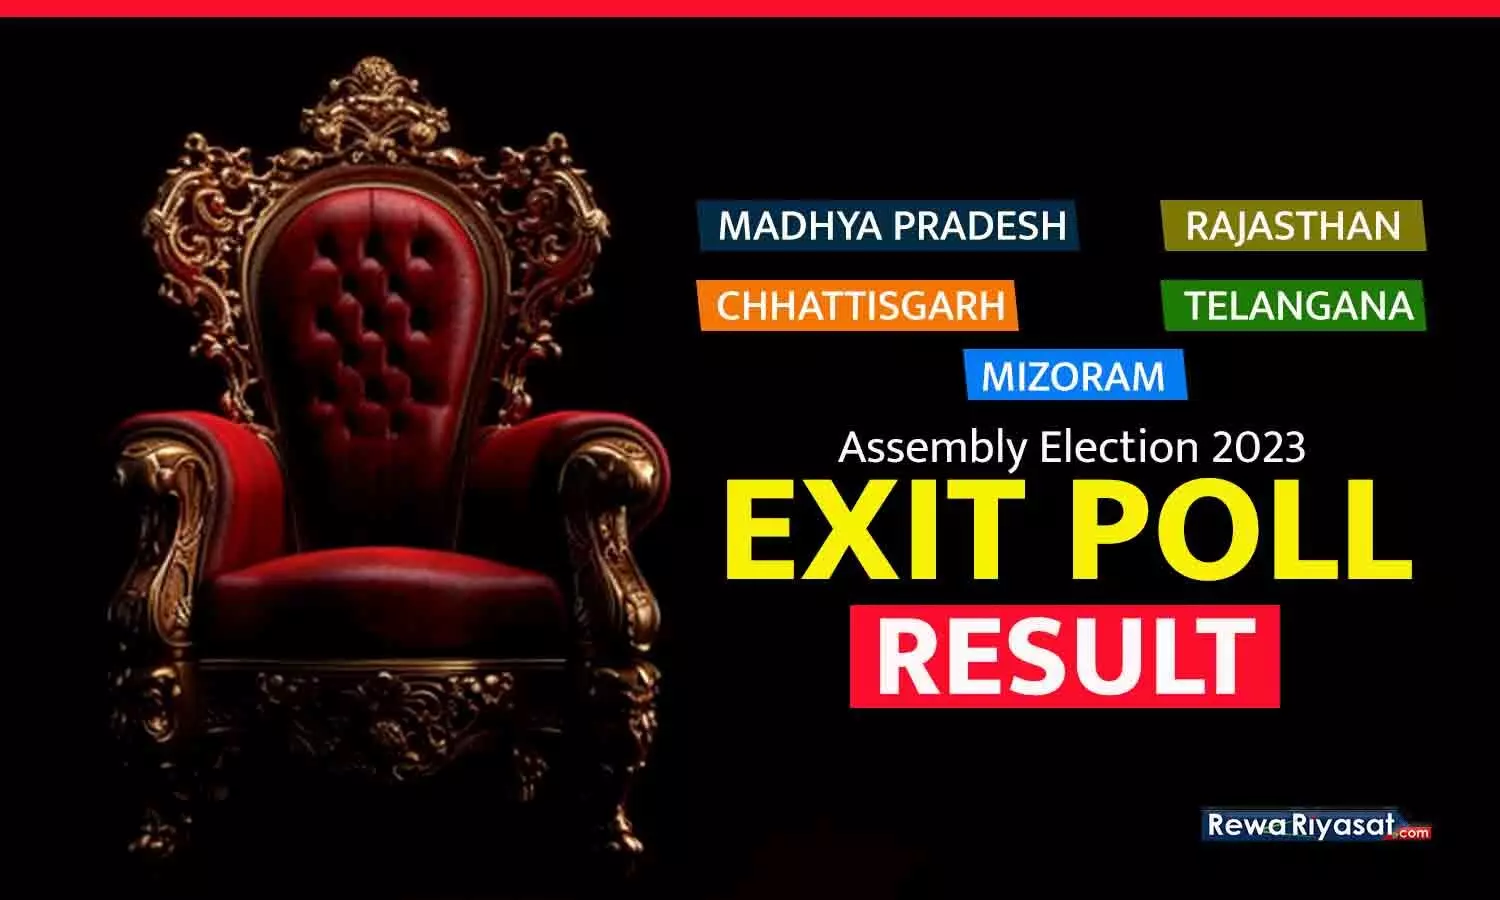 5 राज्यों में विधानसभा चुनावों के EXIT POLL: MP-राजस्थान में BJP, छत्तीसगढ़-तेलंगाना में कांग्रेस की सरकार बनने का अनुमान; मिजोरम में ZPM आगे